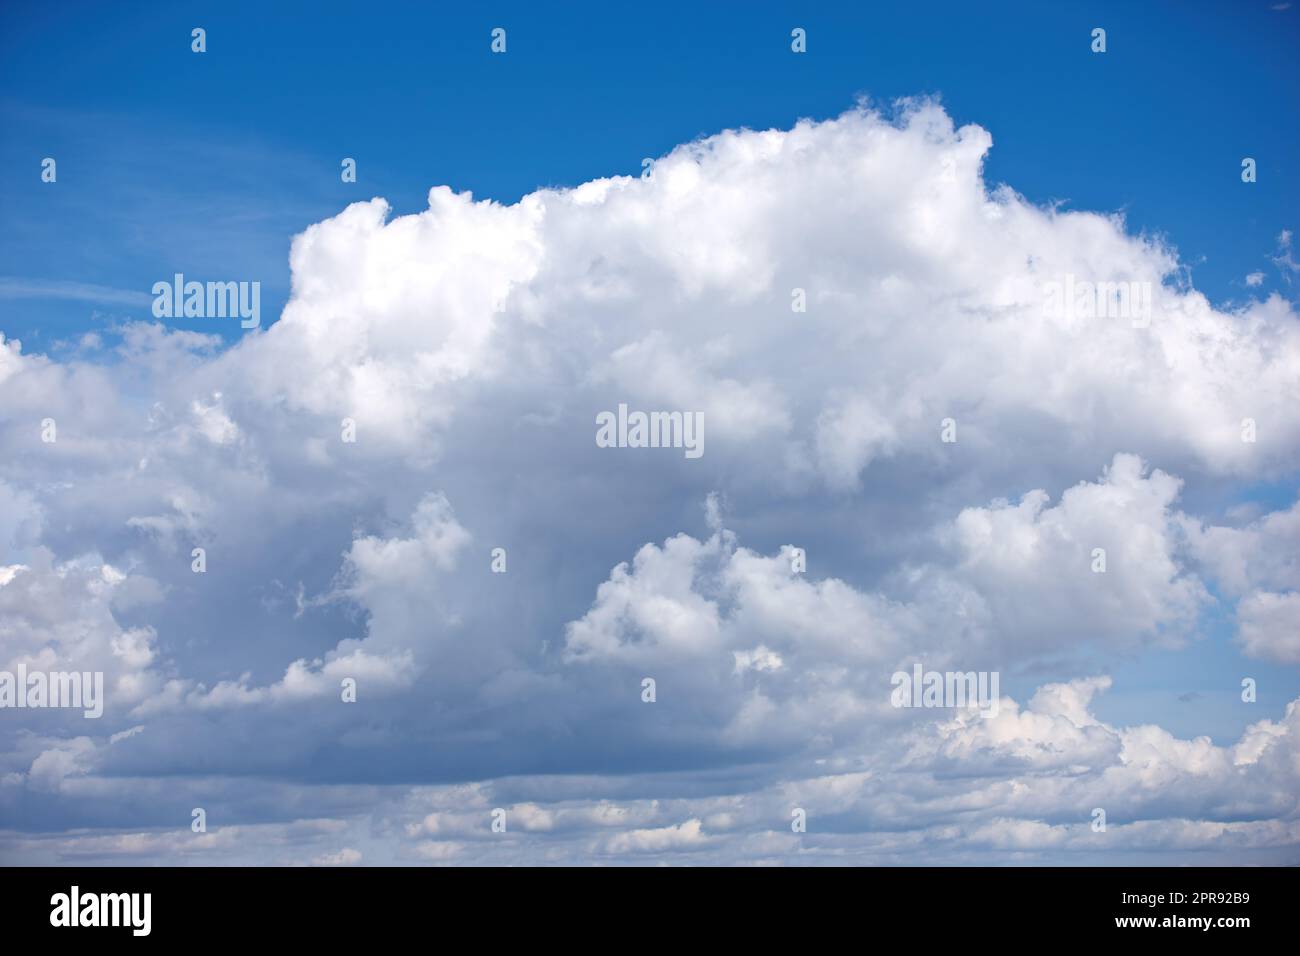 Panoramablick auf einen flauschigen Cumulus in einem blauen Himmel im Sommer mit Kopierraum. Hohe malerische und kopierte Ausblicke auf eine wolkige Atmosphäre und das Klima in einer natürlichen Umgebung während des Tages Stockfoto